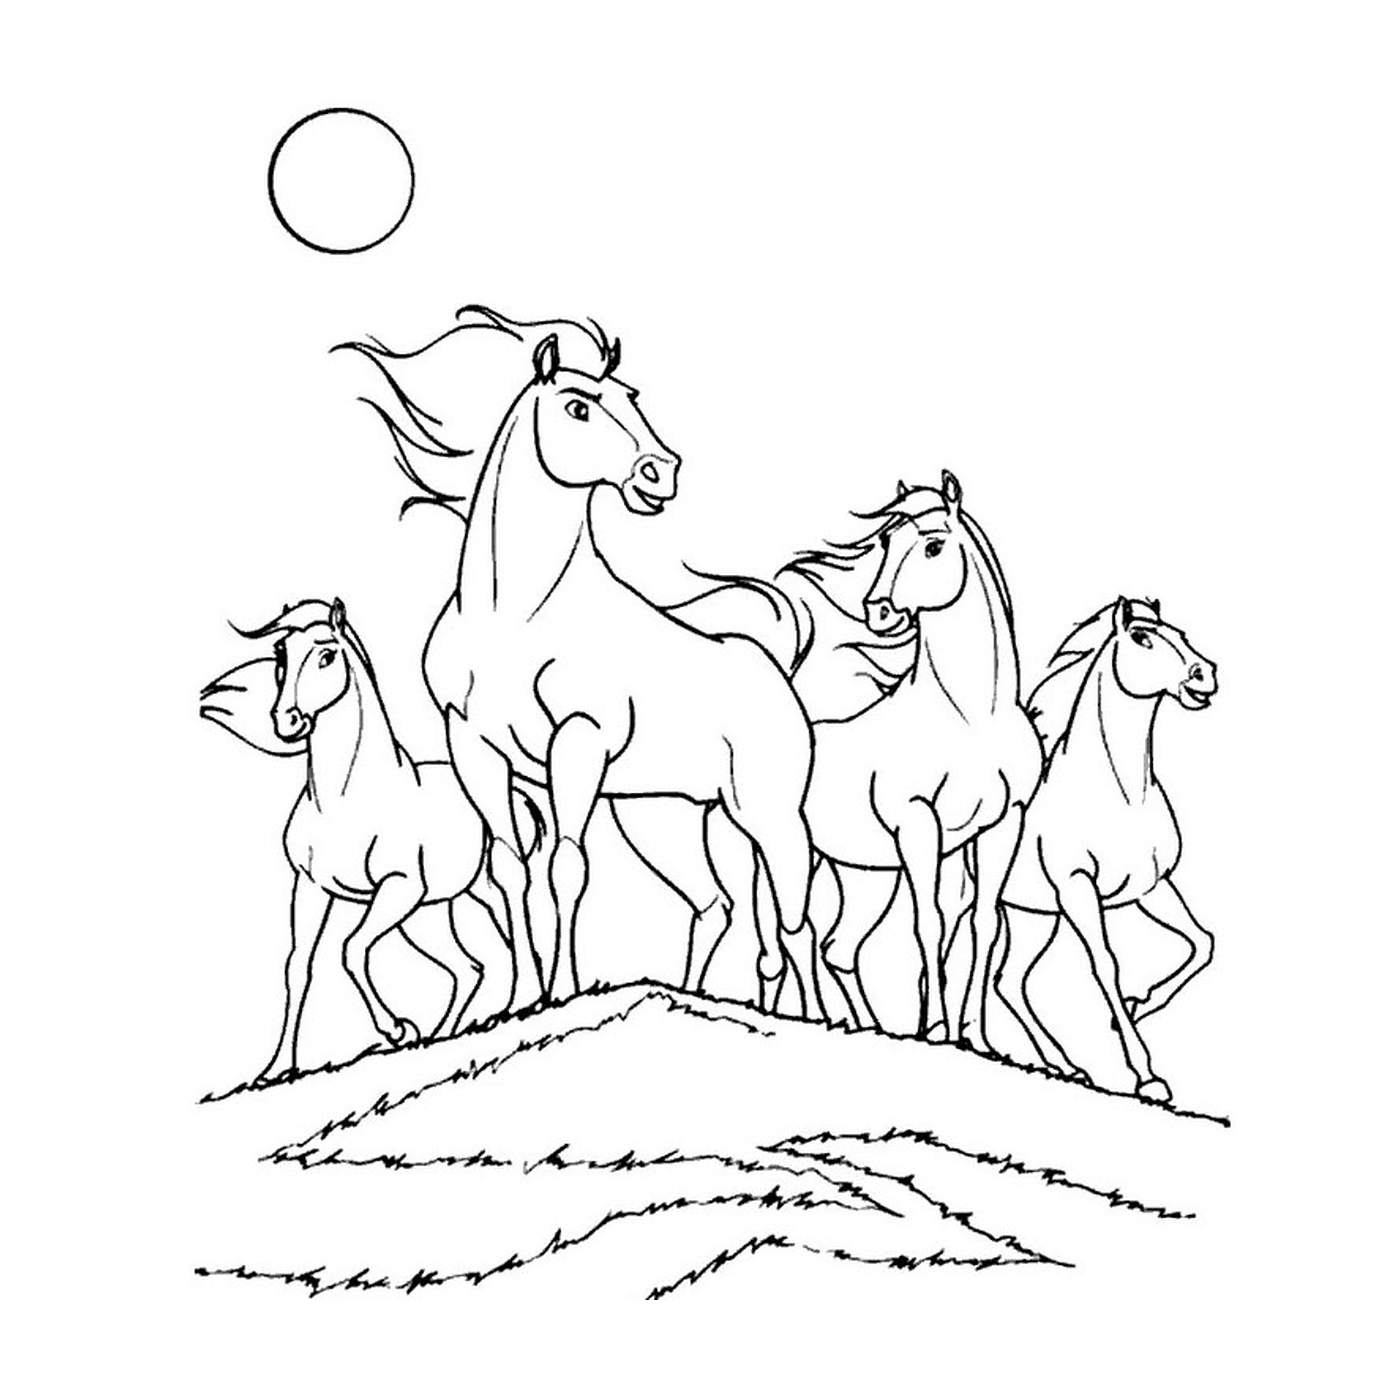   Groupe de chevaux se tenant sur une colline herbeuse 